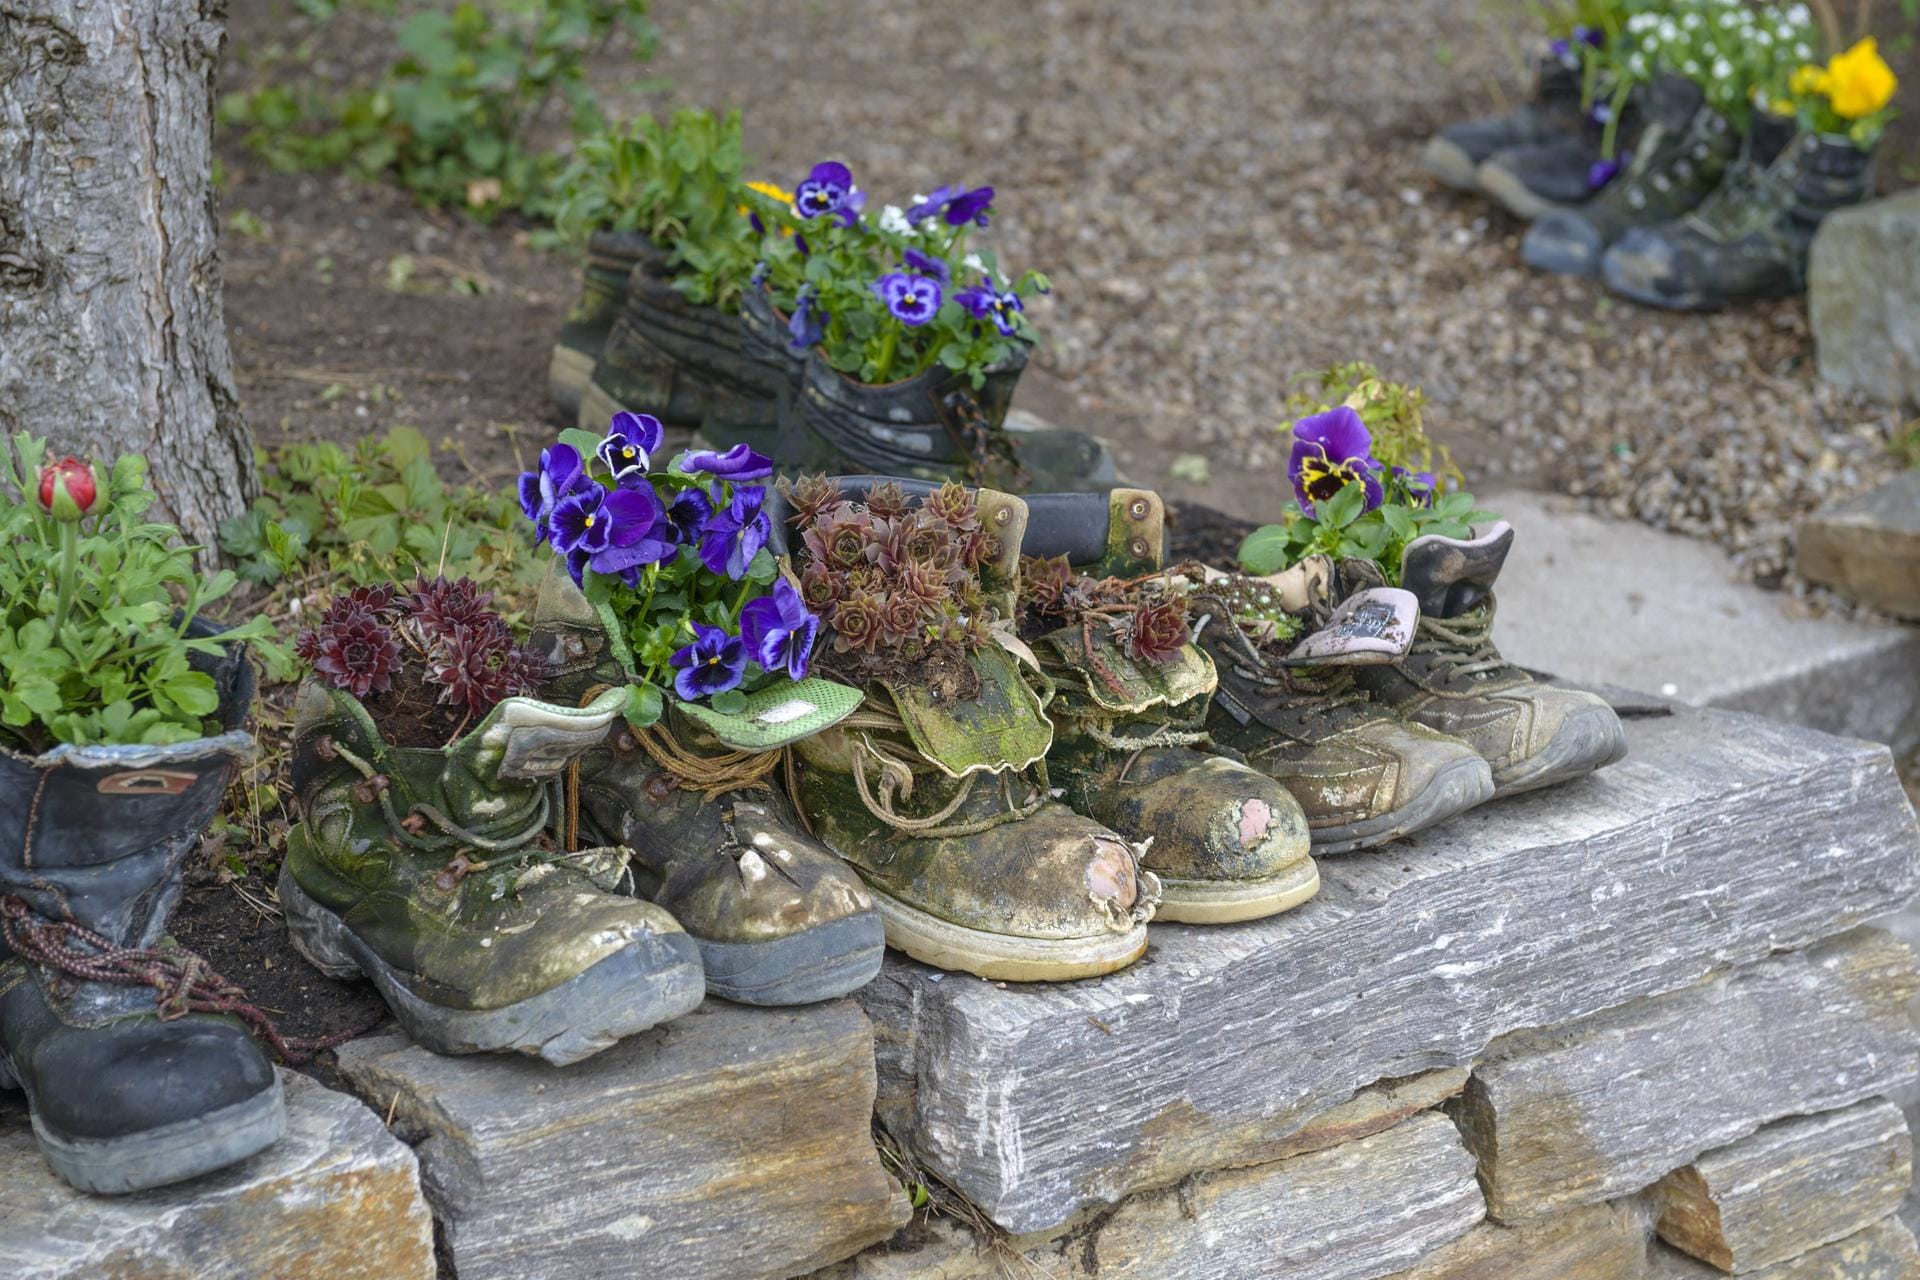 Bepflanzte Schuhe: Befüllen Sie ein paar Schuhe, die nicht mehr getragen werden, mit Erde und setzen Sie Hauswurz hinein.